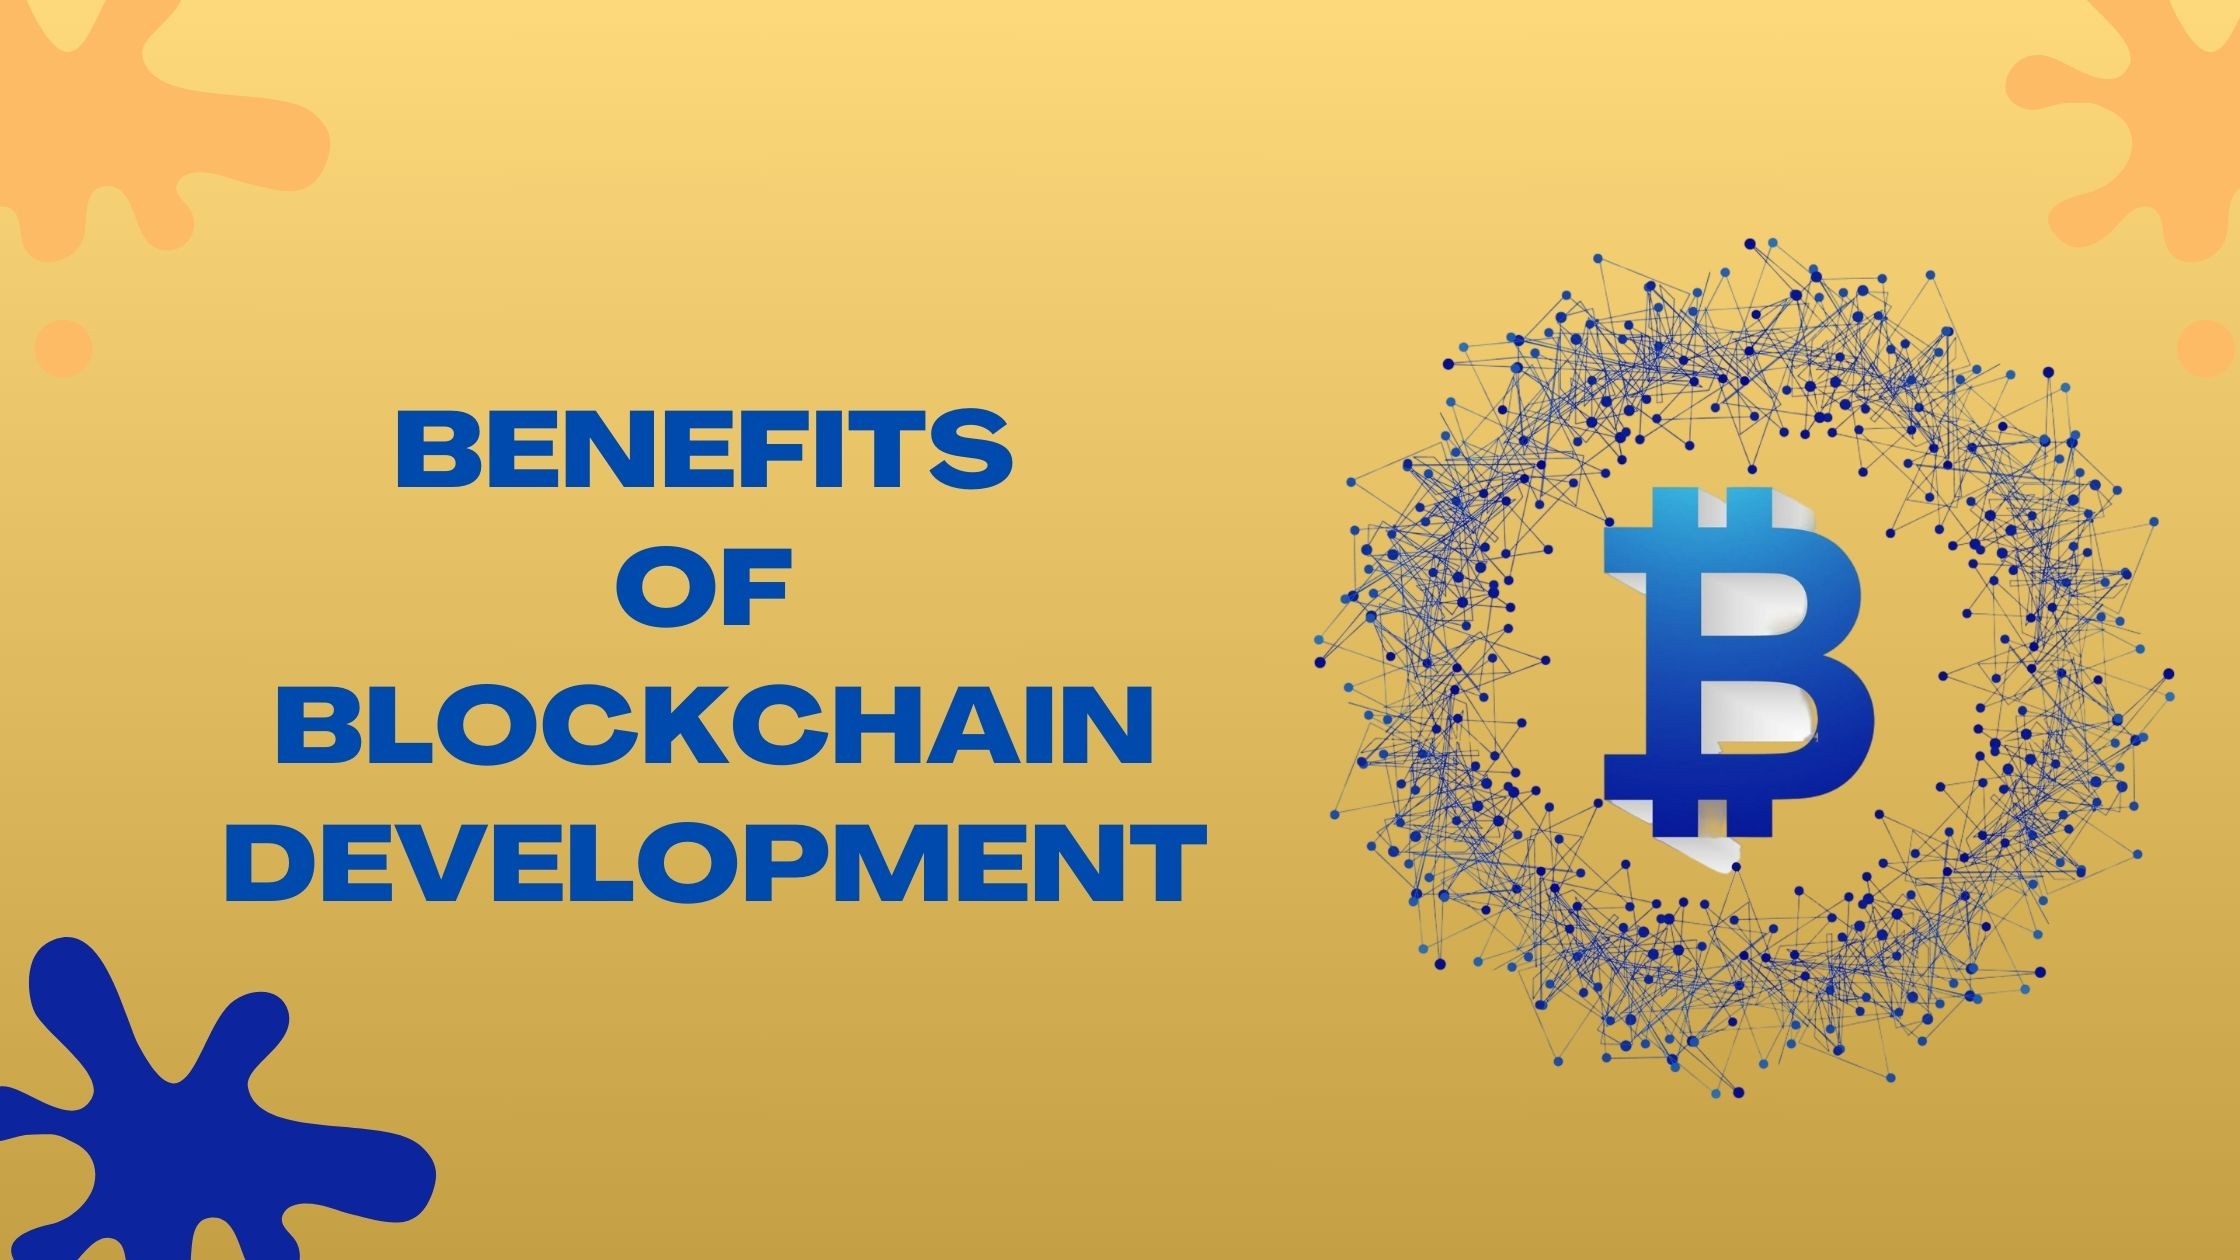 blockchain development services